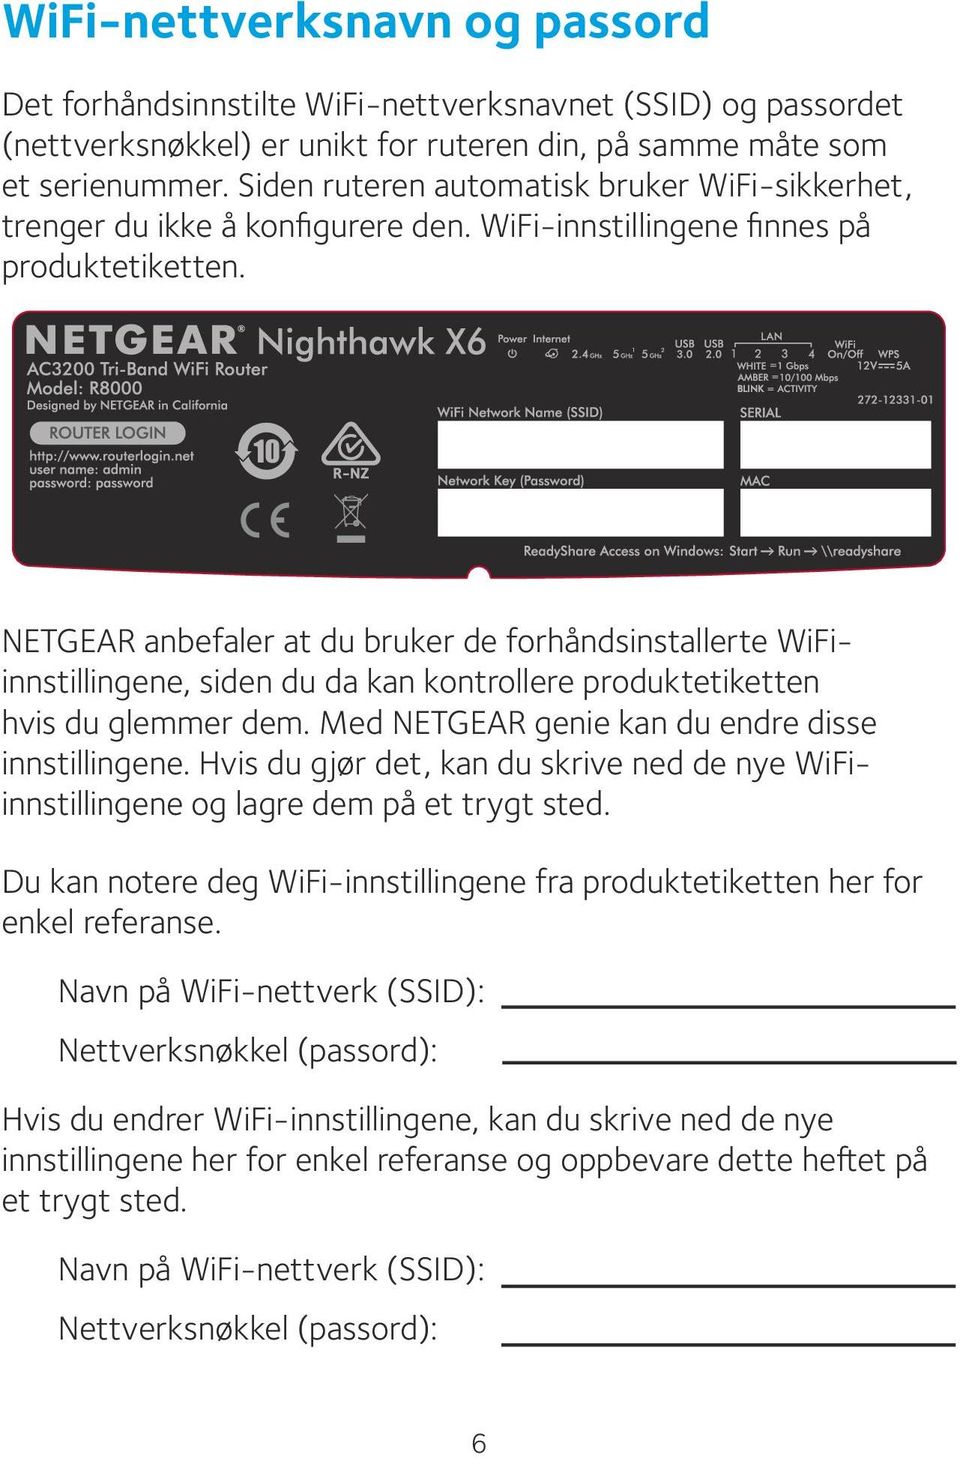 NETGEAR anbefaler at du bruker de forhåndsinstallerte WiFiinnstillingene, siden du da kan kontrollere produktetiketten hvis du glemmer dem. Med NETGEAR genie kan du endre disse innstillingene.